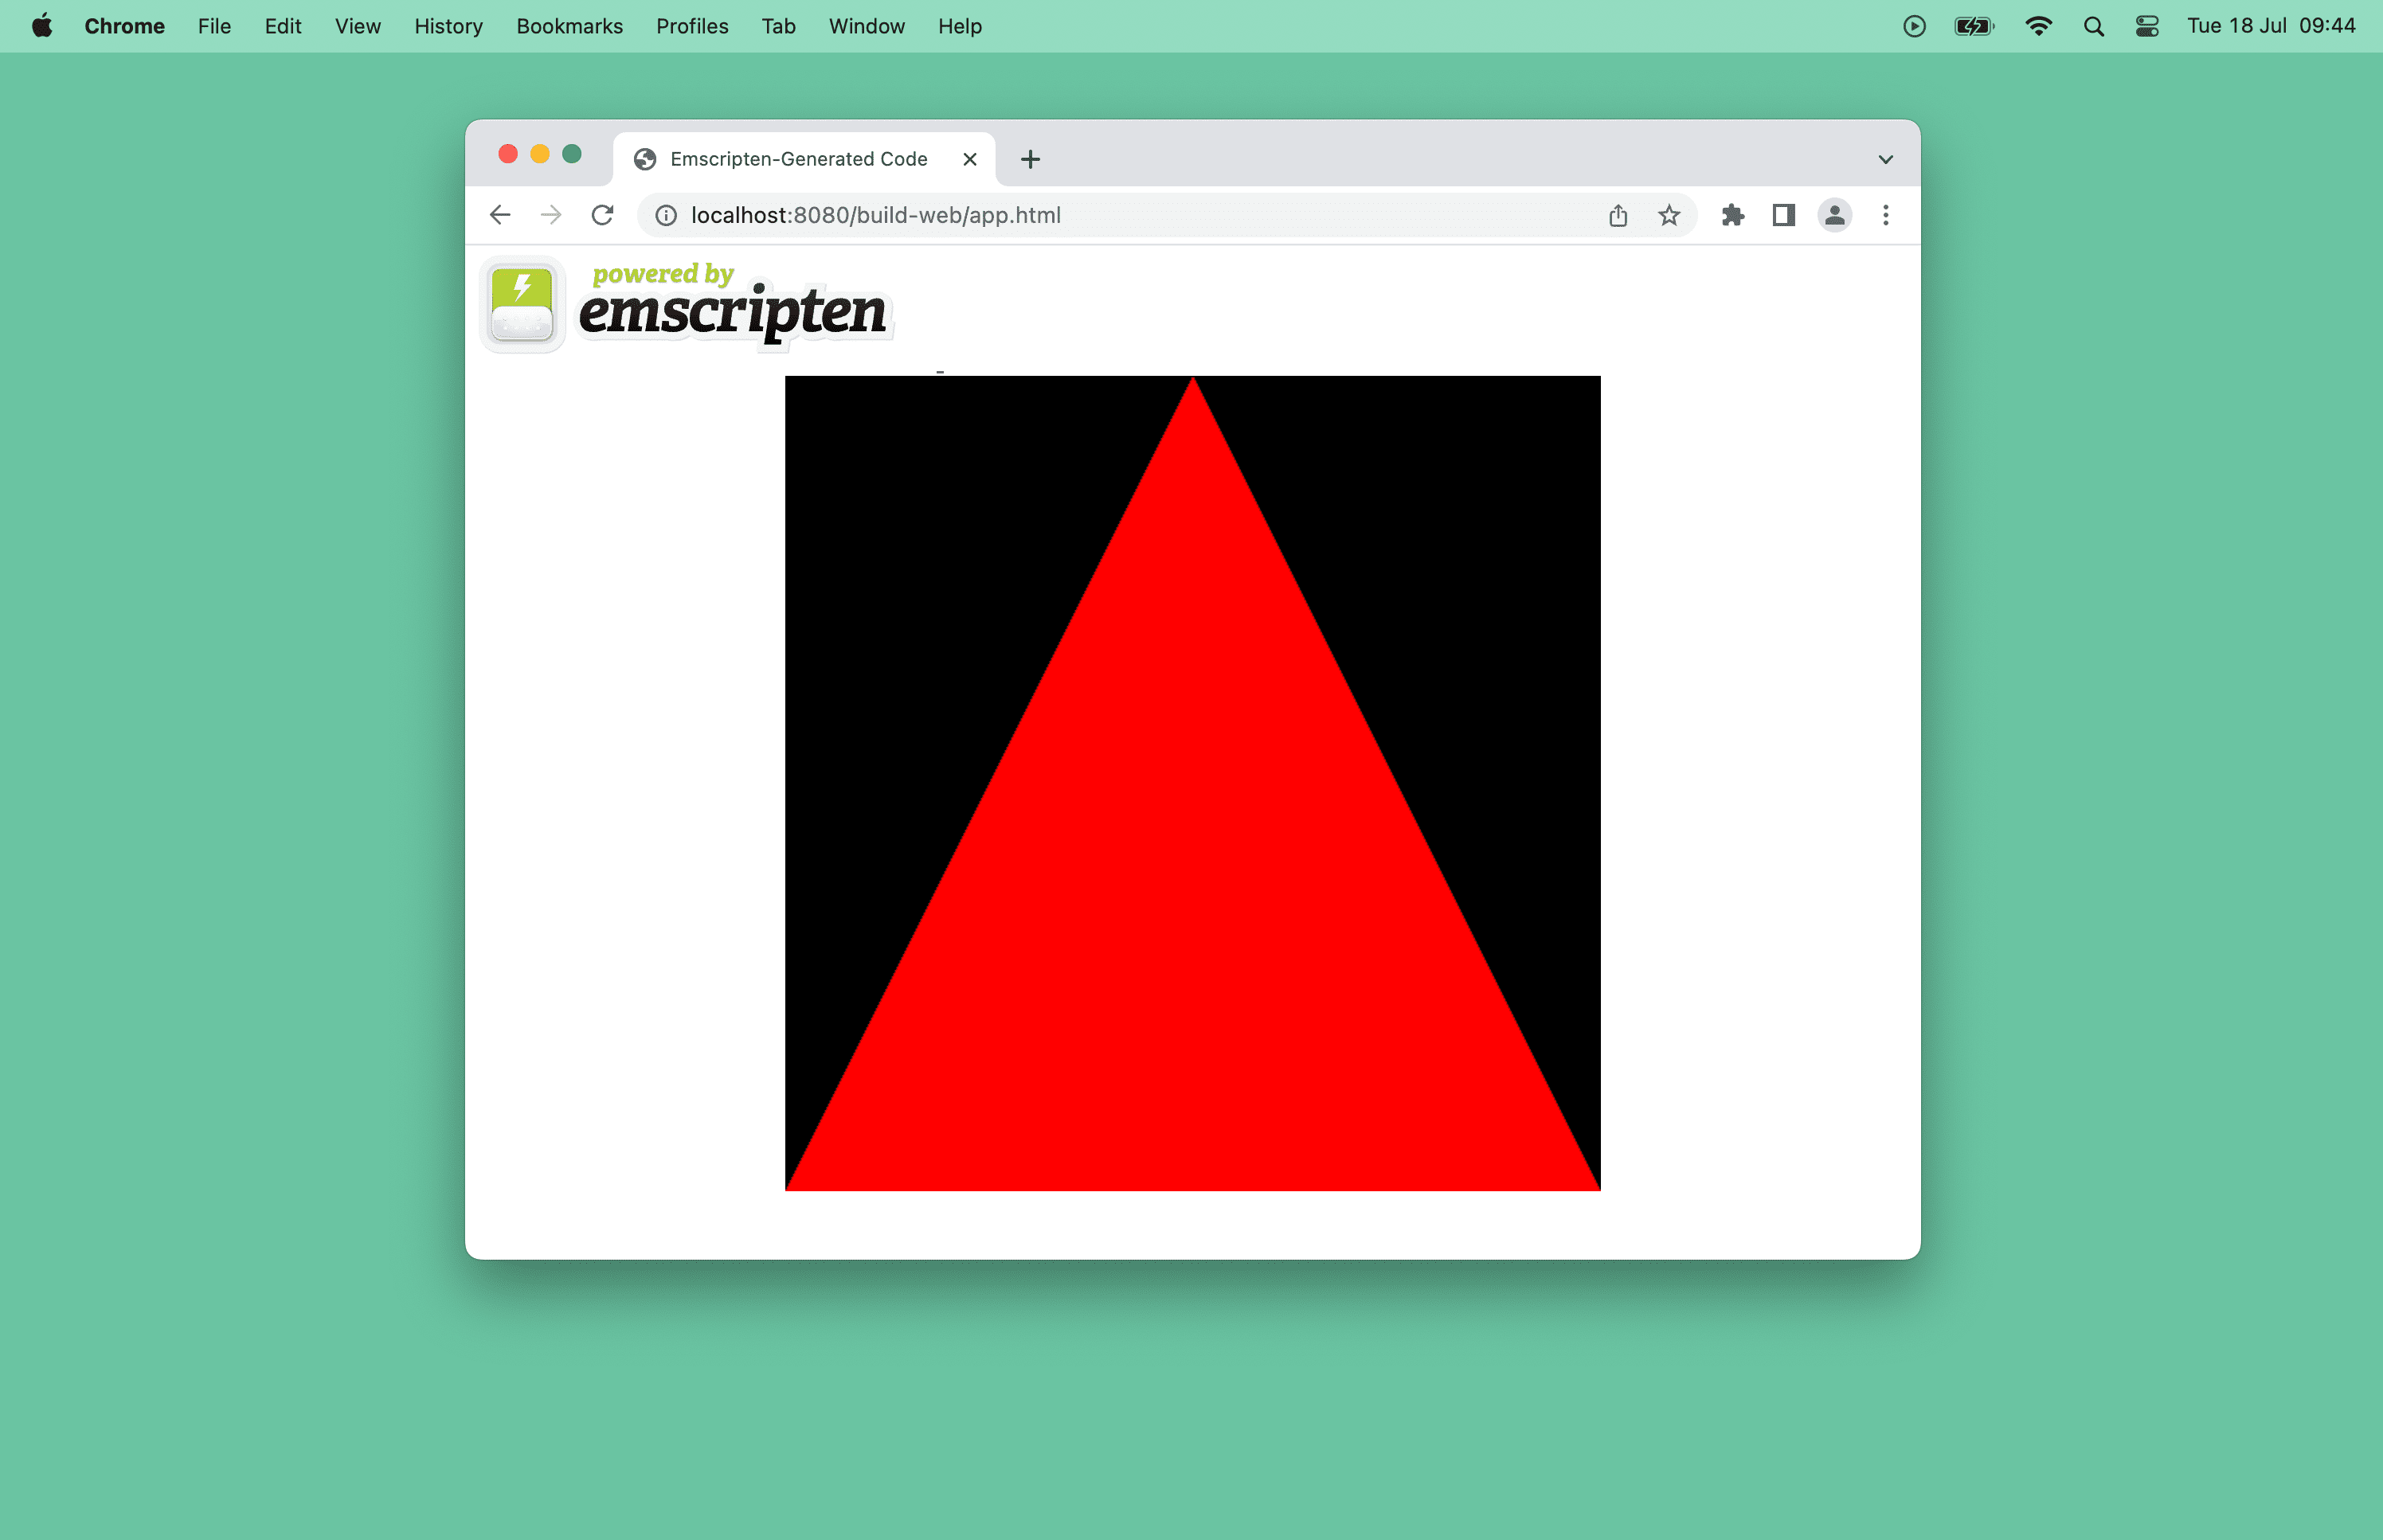 瀏覽器視窗中紅色三角形的螢幕截圖。